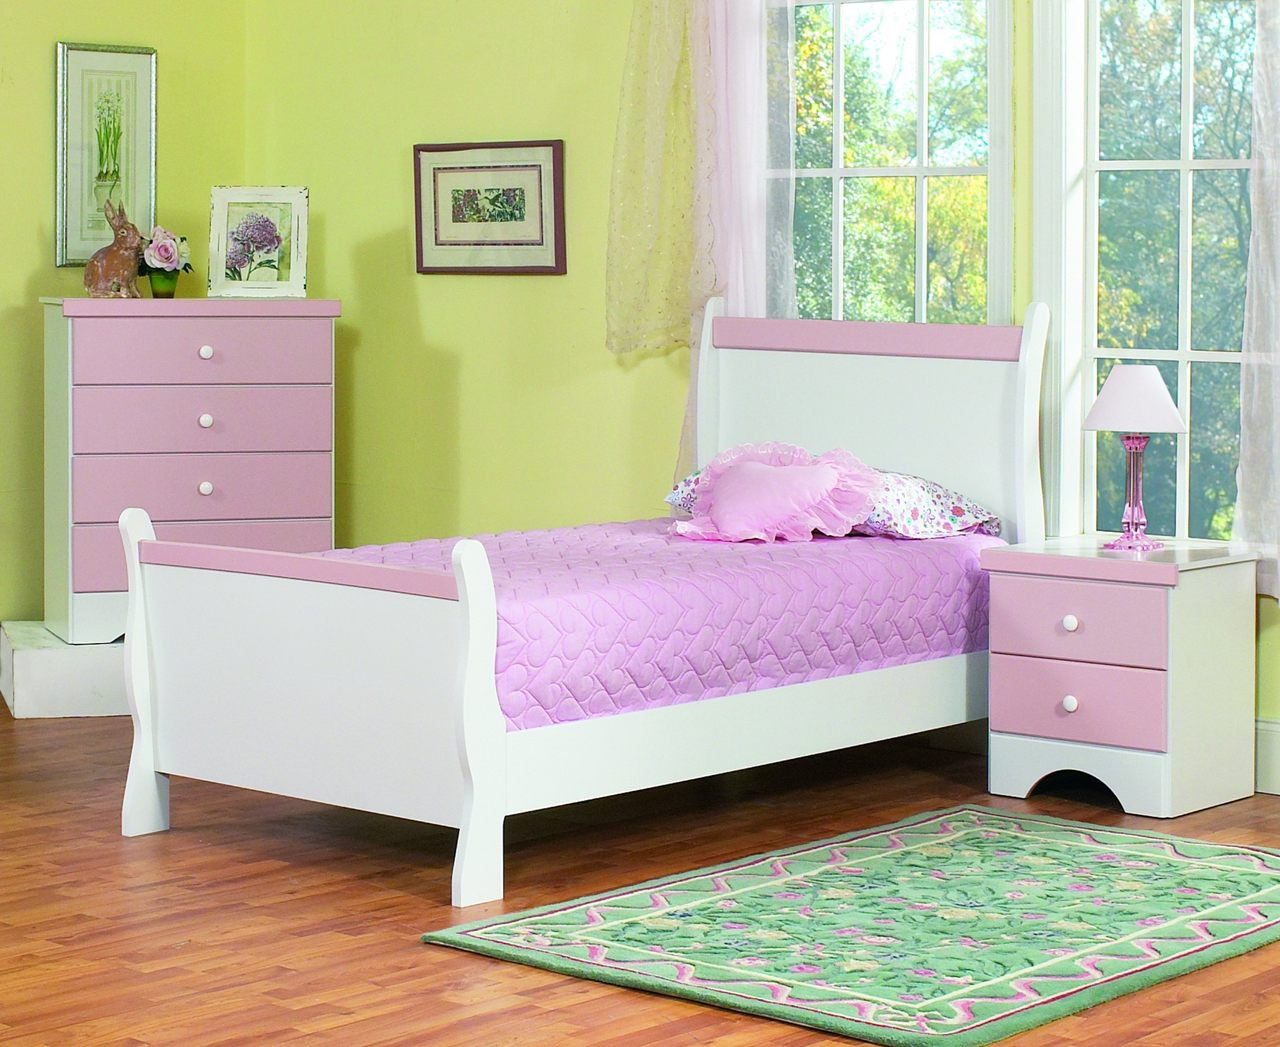 Kids Bedroom Furnitue
 The Captivating Kids Bedroom Furniture Amaza Design